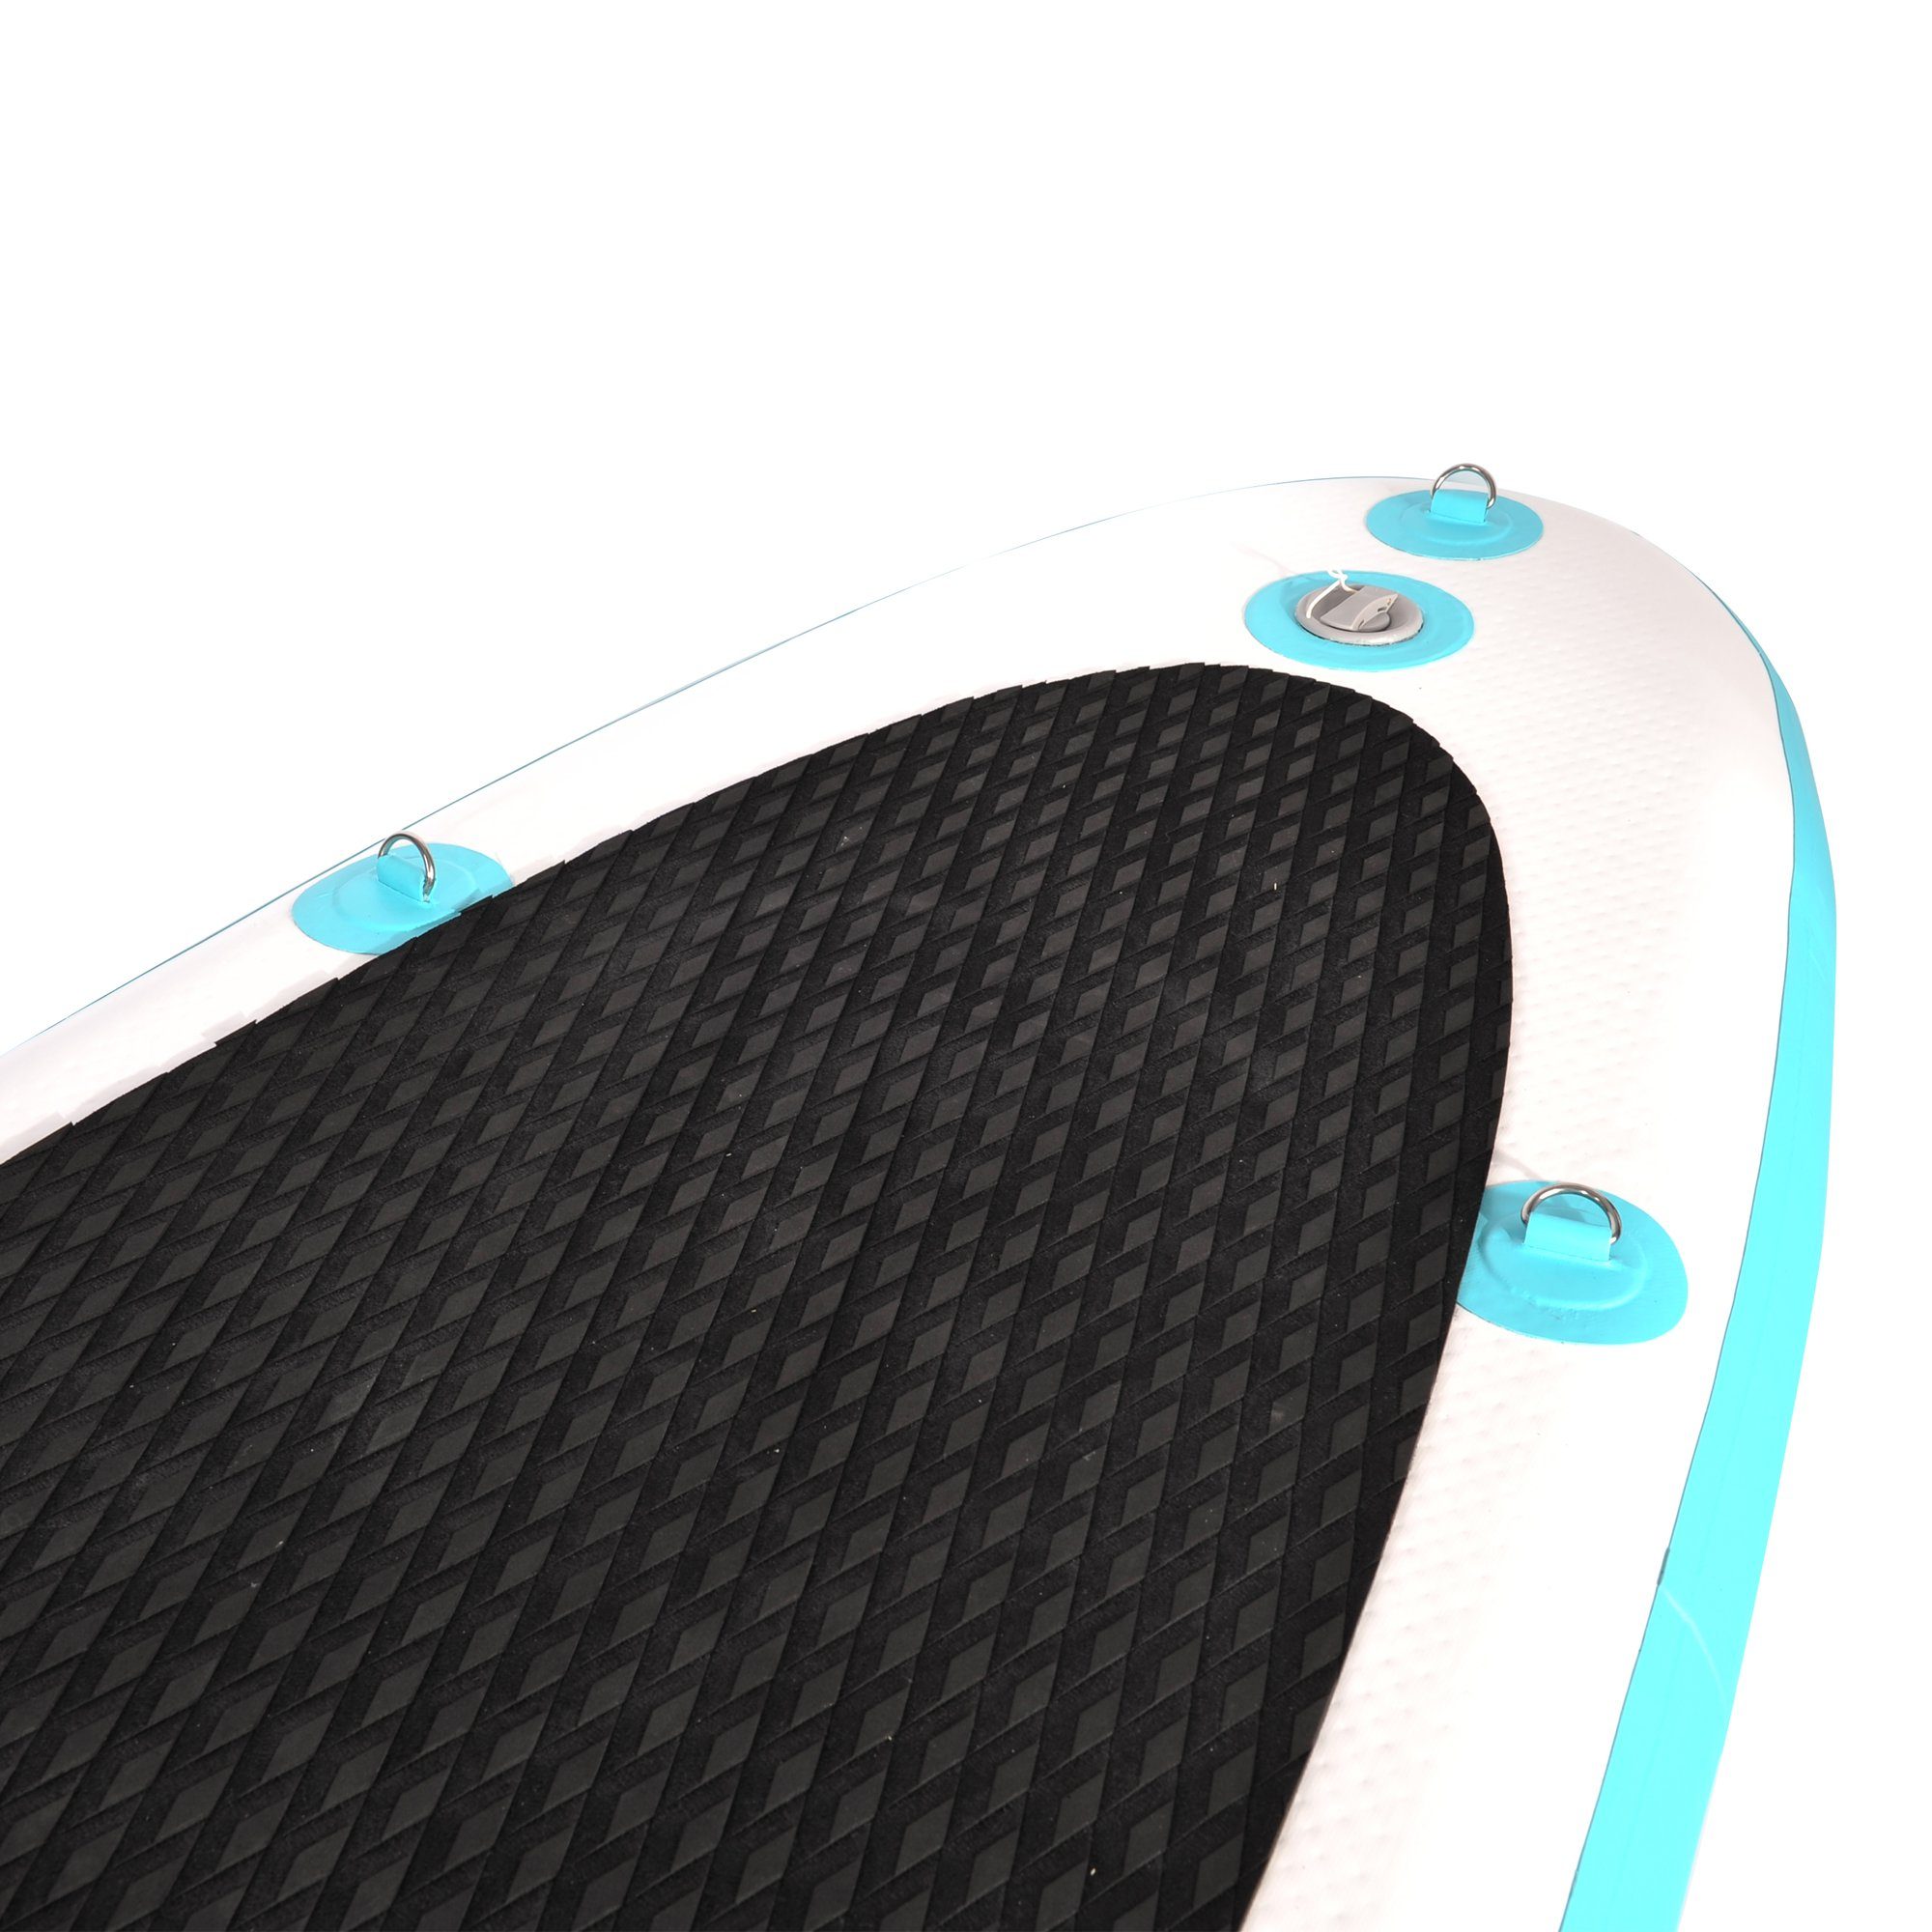 NEMAXX Inflatable Surfbrett, Board - up zu inkl. & PB320 Surf-Board transportieren Paddle leicht Nemaxx - Stand - Tasche, 320x78x15cm, Paddel aufblasbar türkis/gelb SUP-Board